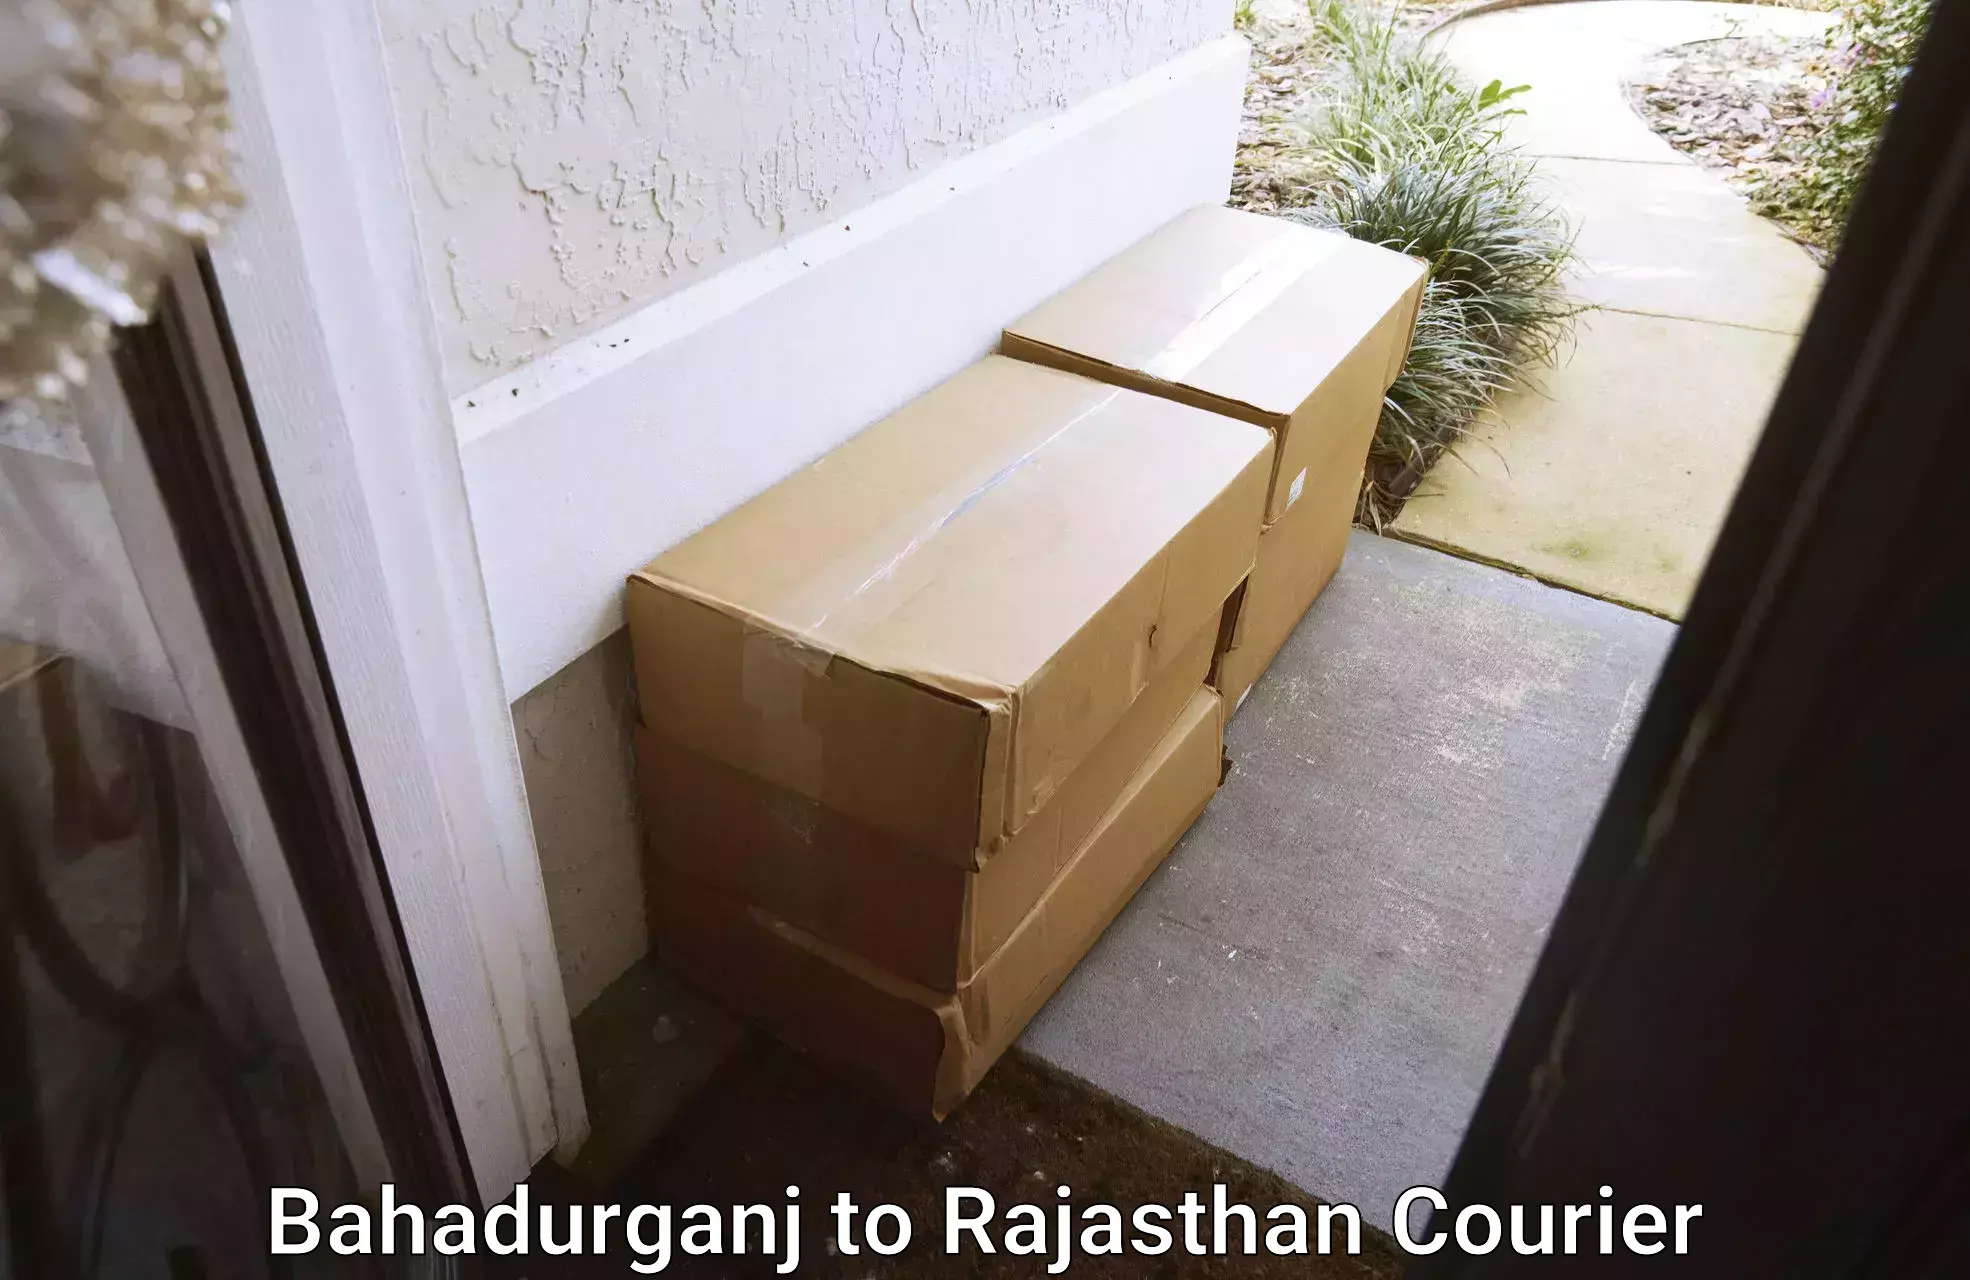 Furniture relocation experts Bahadurganj to Buhana